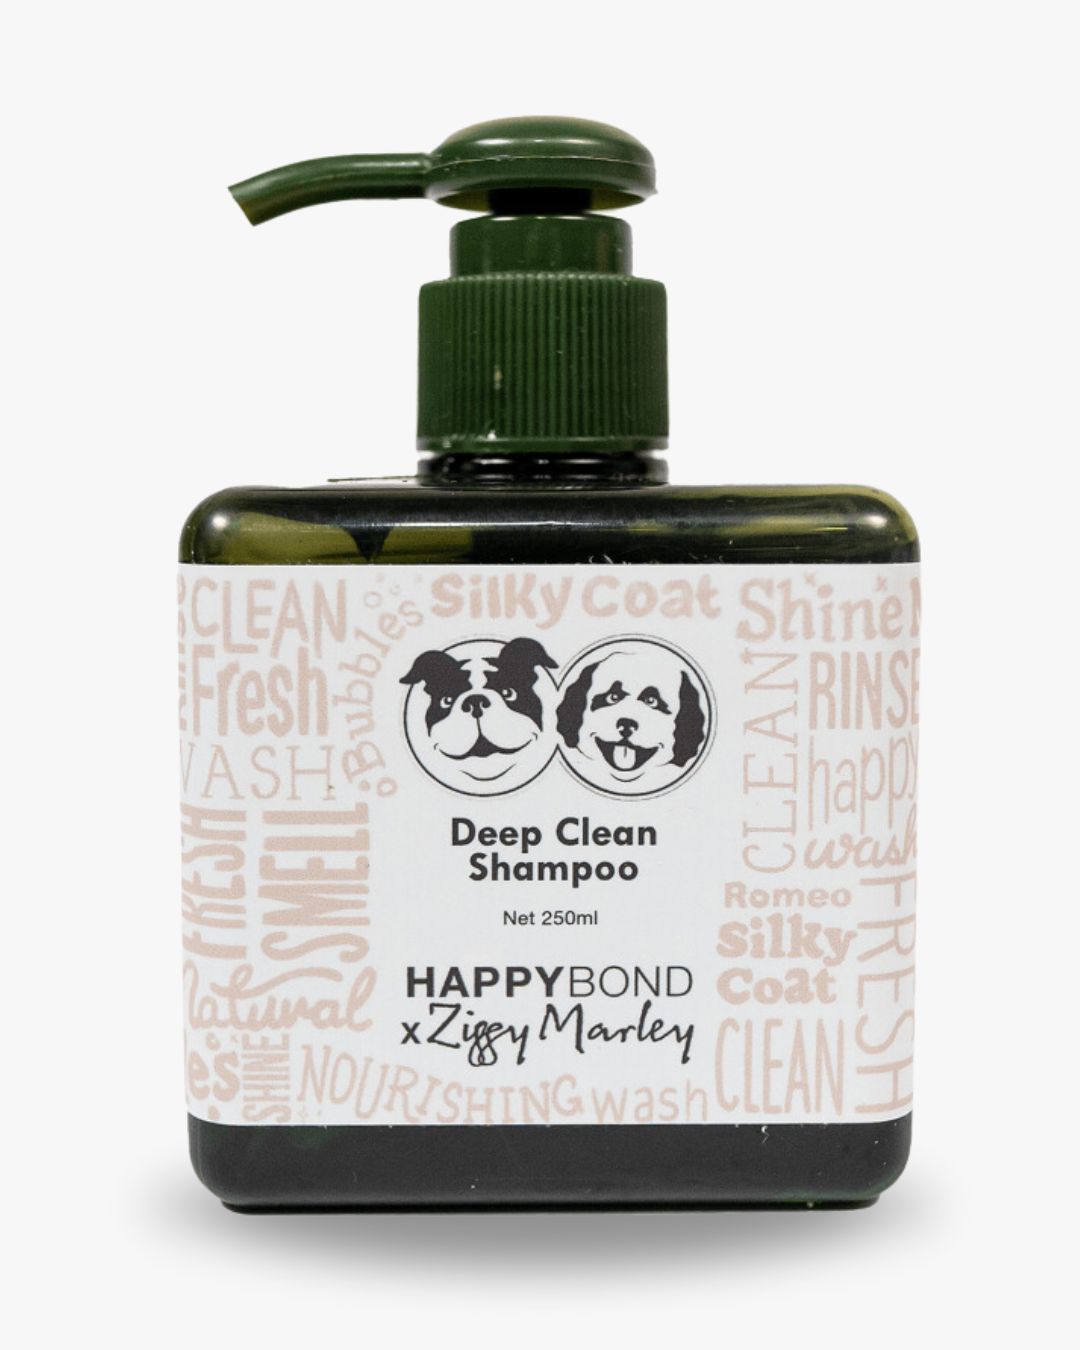 Deep Clean - Shampoo